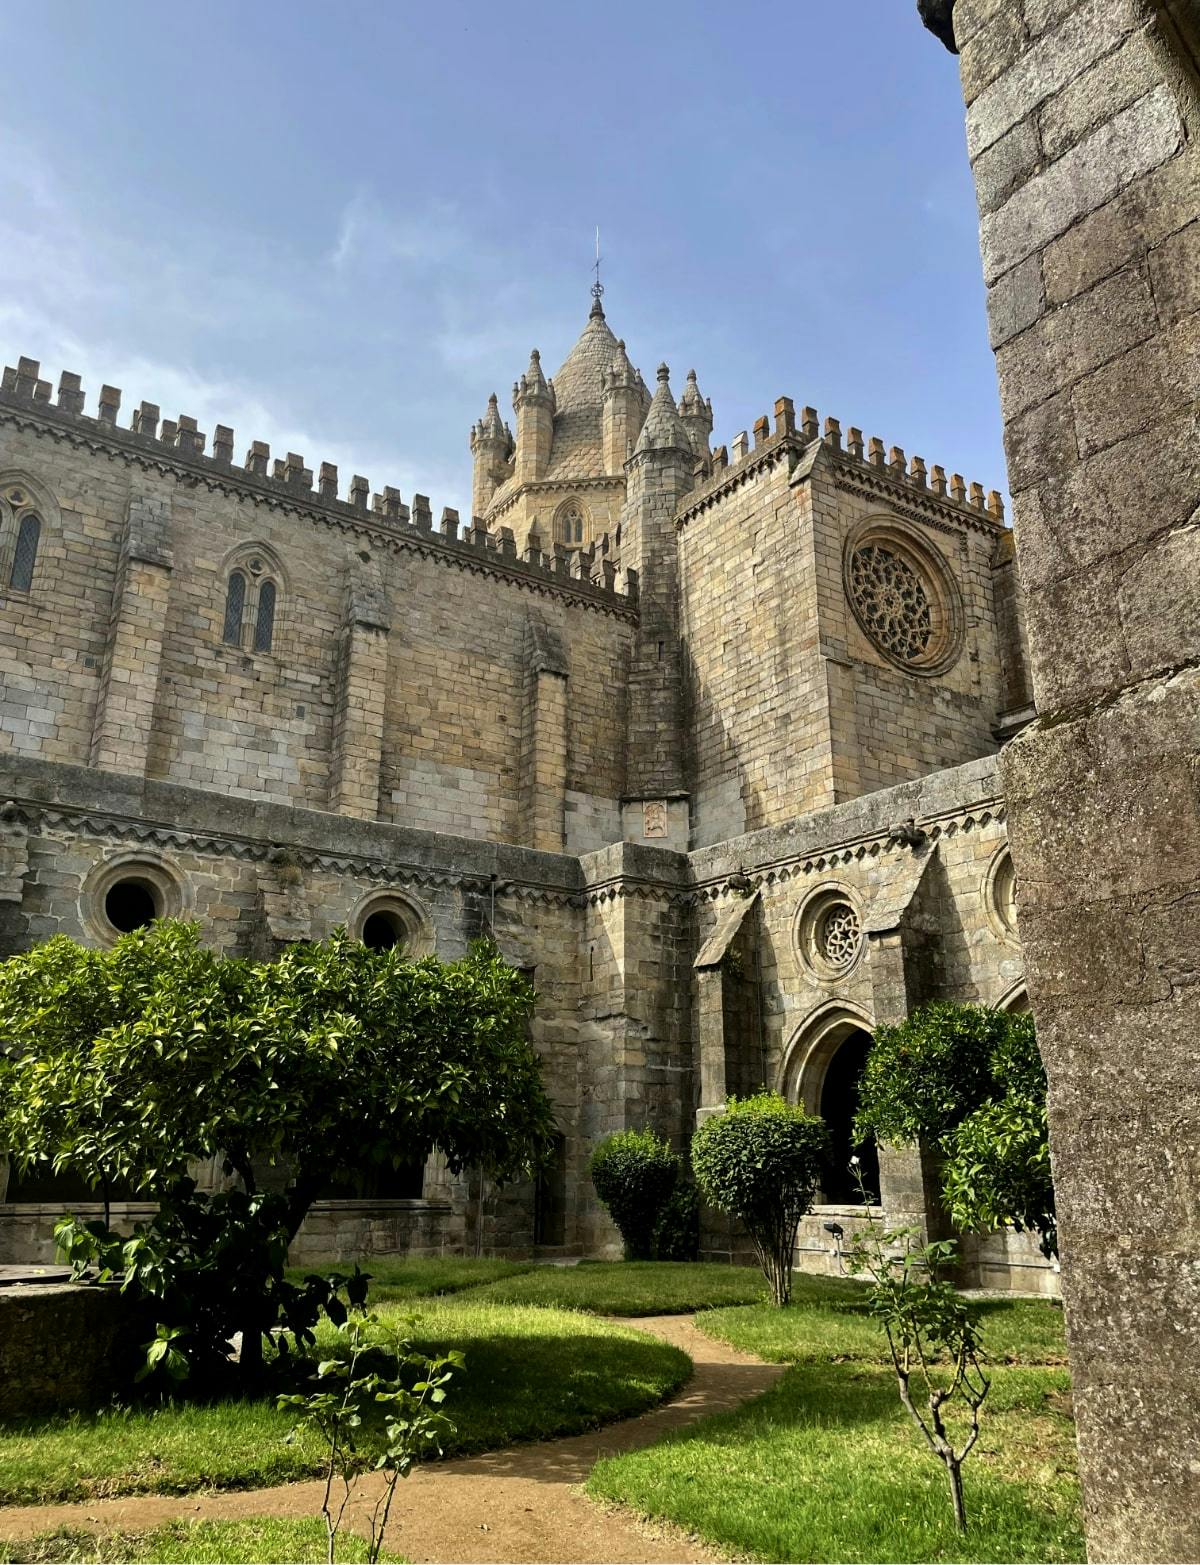 The Roman Temple of Évora + The Garden of Diana + The Sé Basilica of Nossa Senhora da Assunção (Our Lady of Assumption)